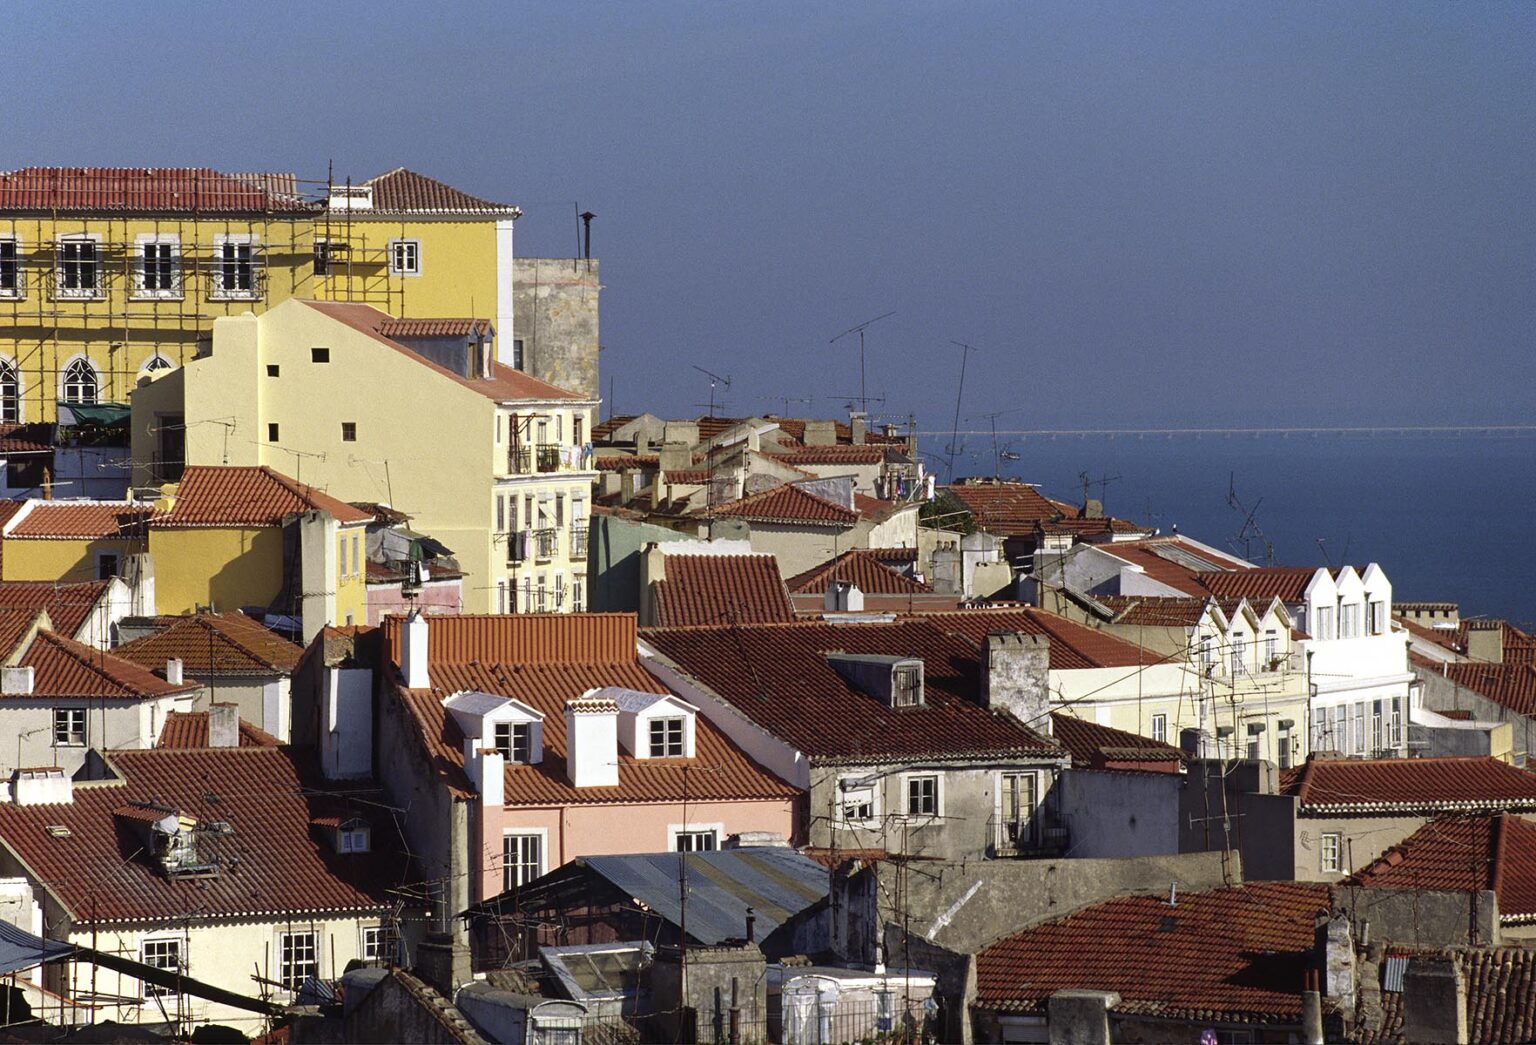 The ALFAMA DISTRICT (Sailors Quarters) of LISBON - PORTUGAL